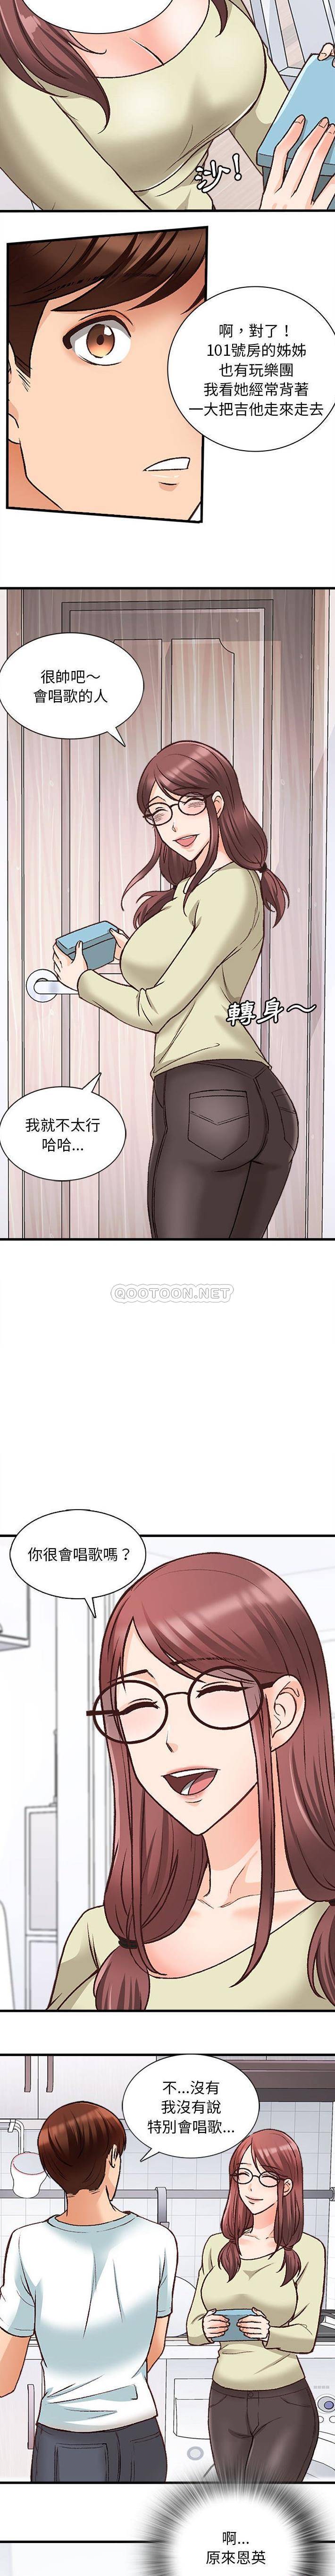 韩国污漫画 幸福公寓 第10话 11